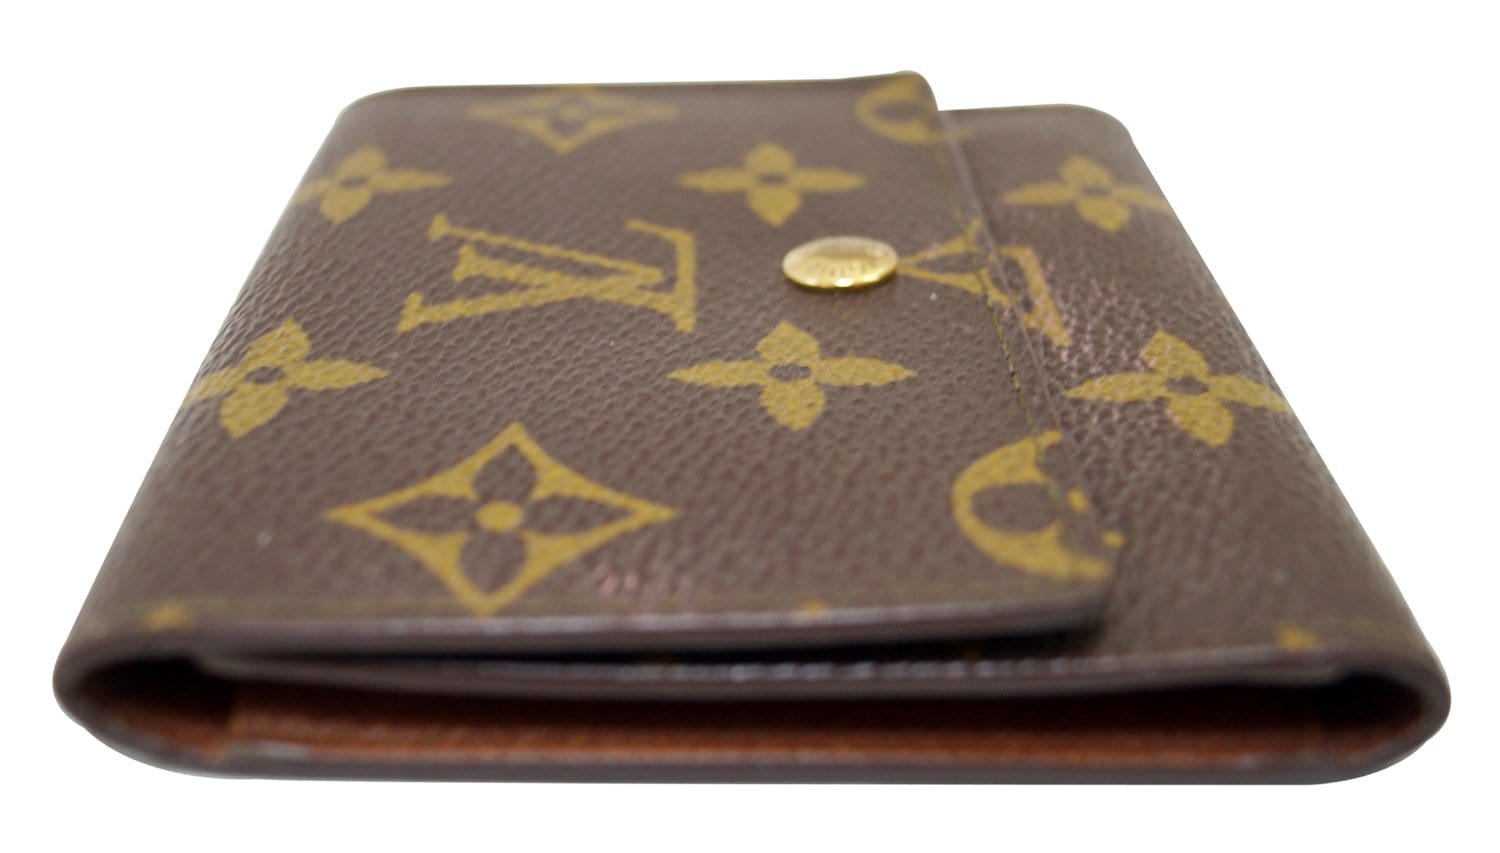 Authentic Louis Vuitton Trifold Monogram Wallet